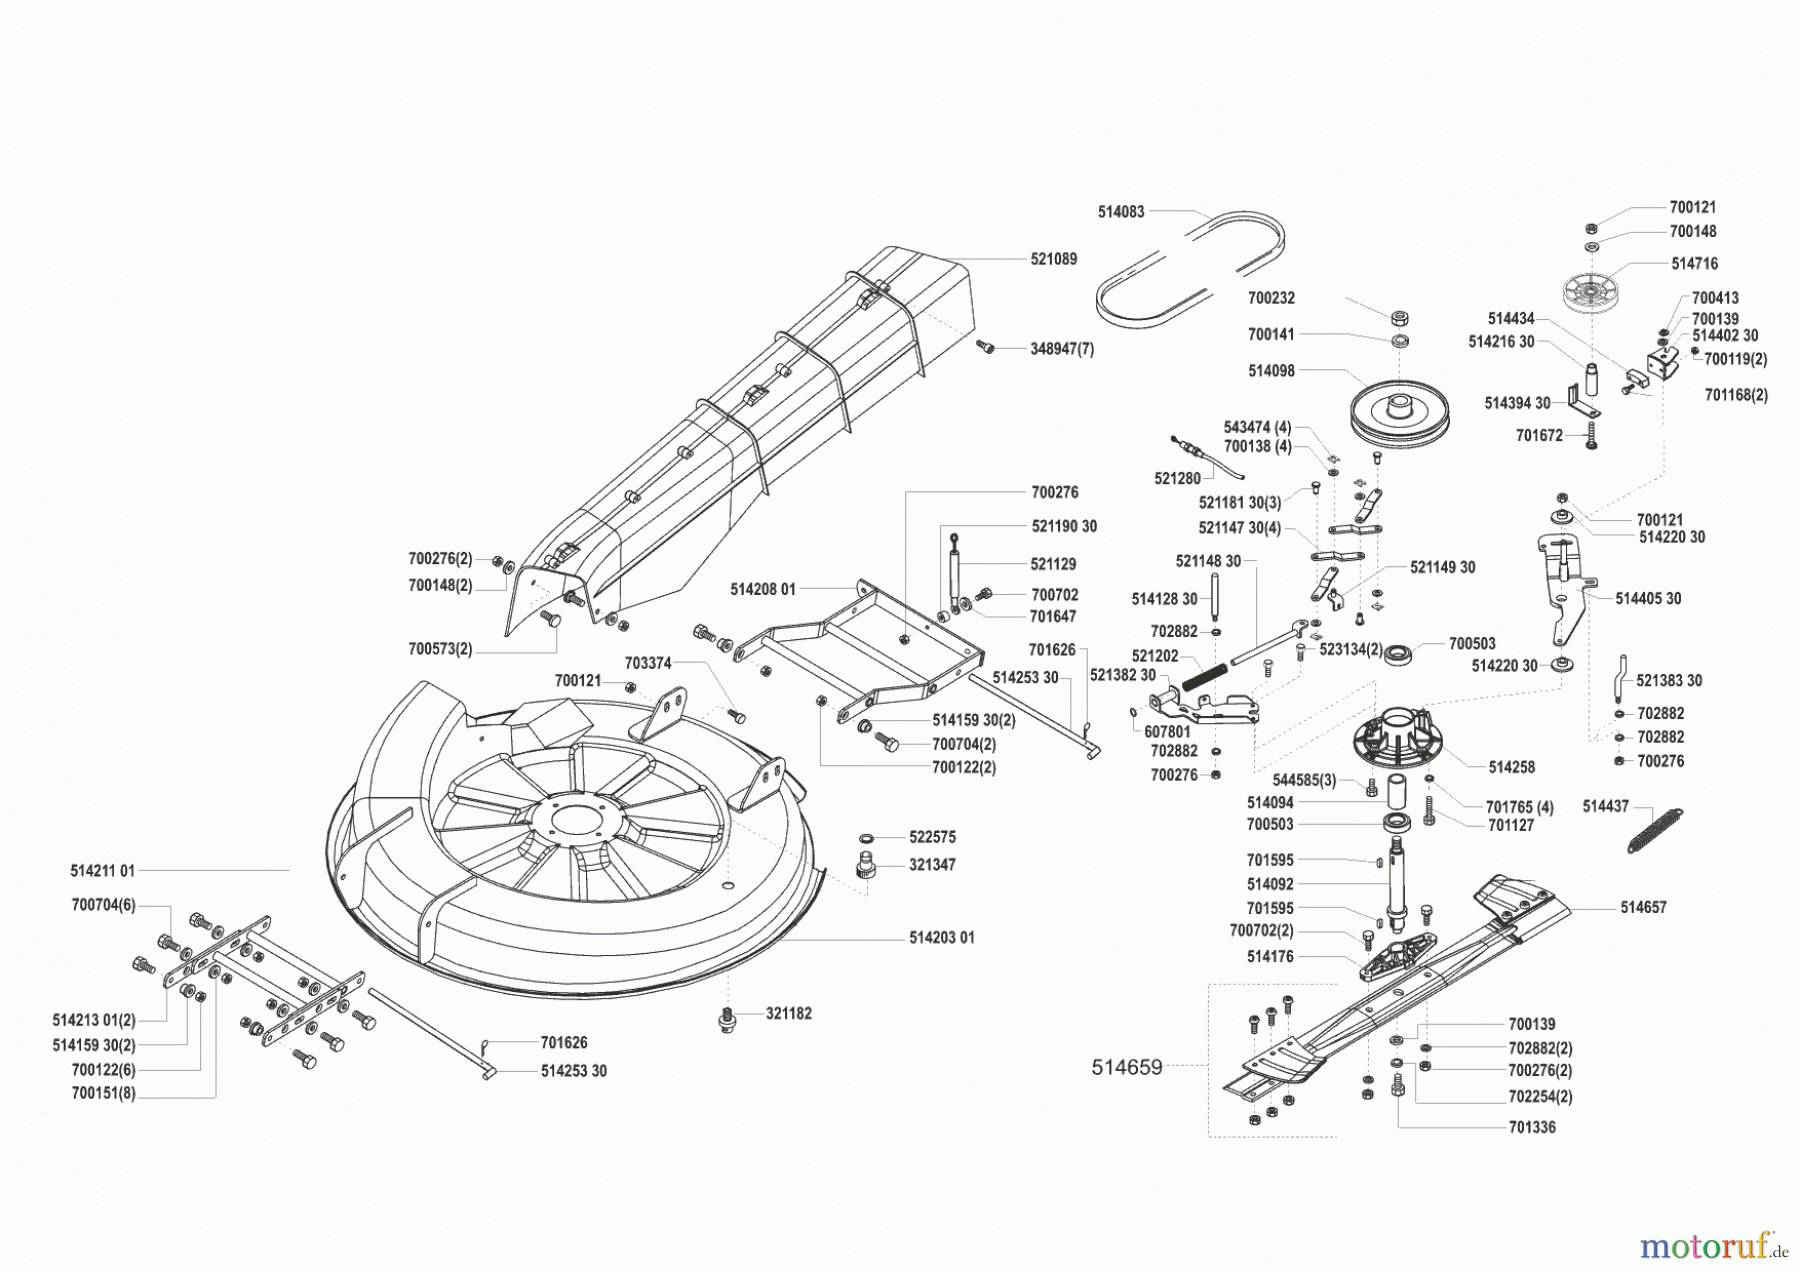  AL-KO Gartentechnik Rasentraktor T-800 SA 01/2001 - 02/2001 Seite 5